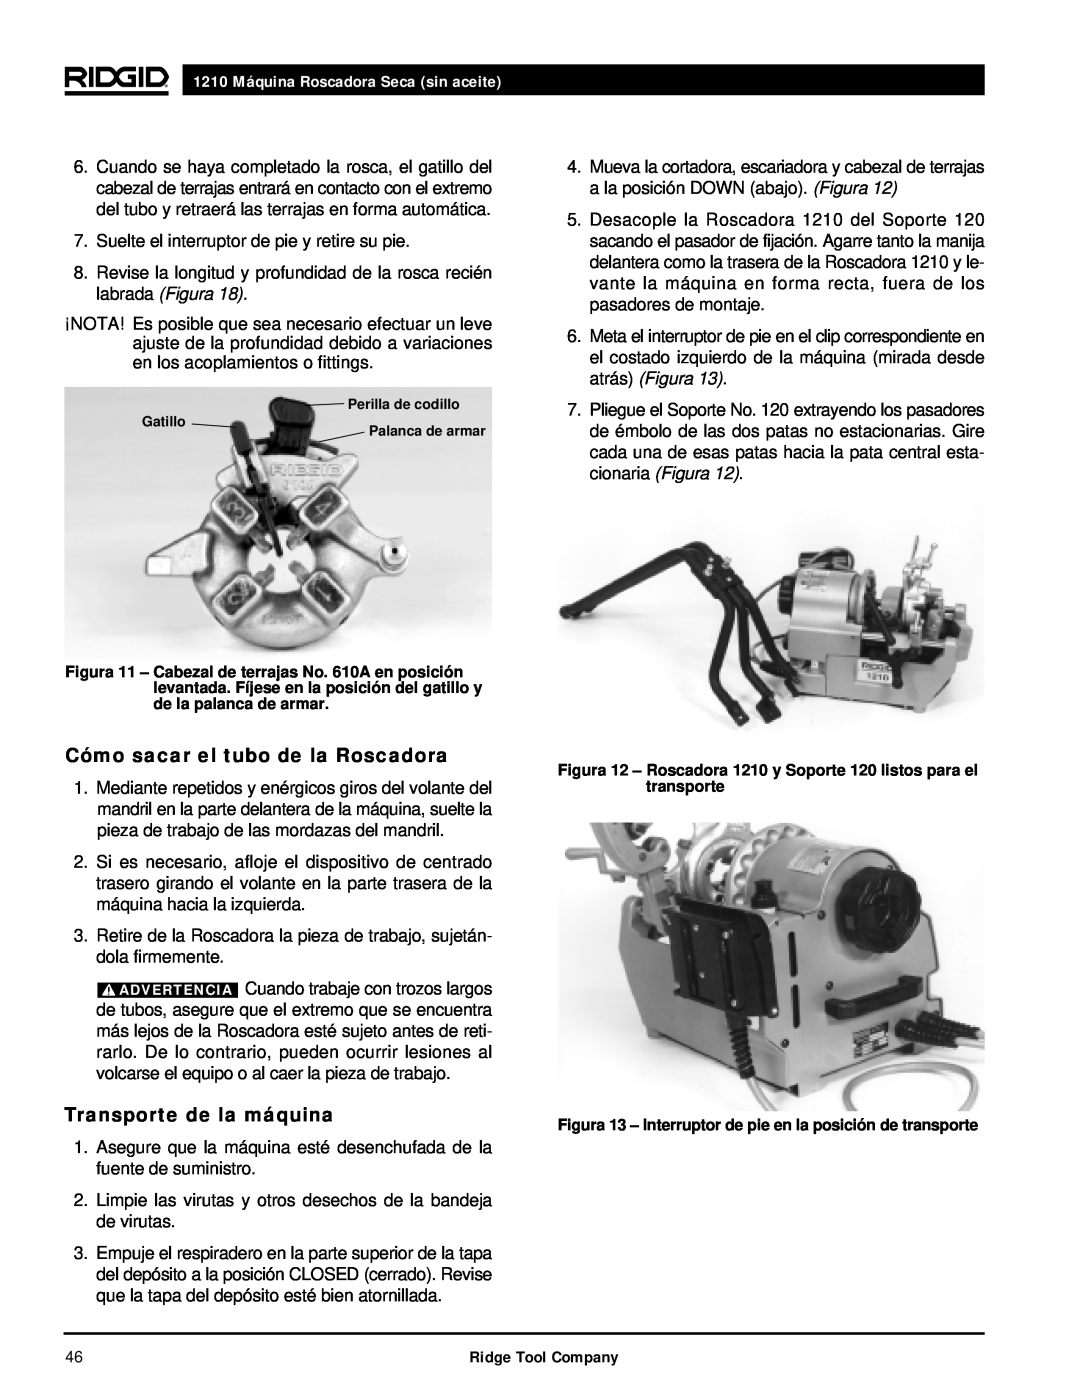 RIDGID manual Cómo sacar el tubo de la Roscadora, Transporte de la máquina, 1210 Máquina Roscadora Seca sin aceite 